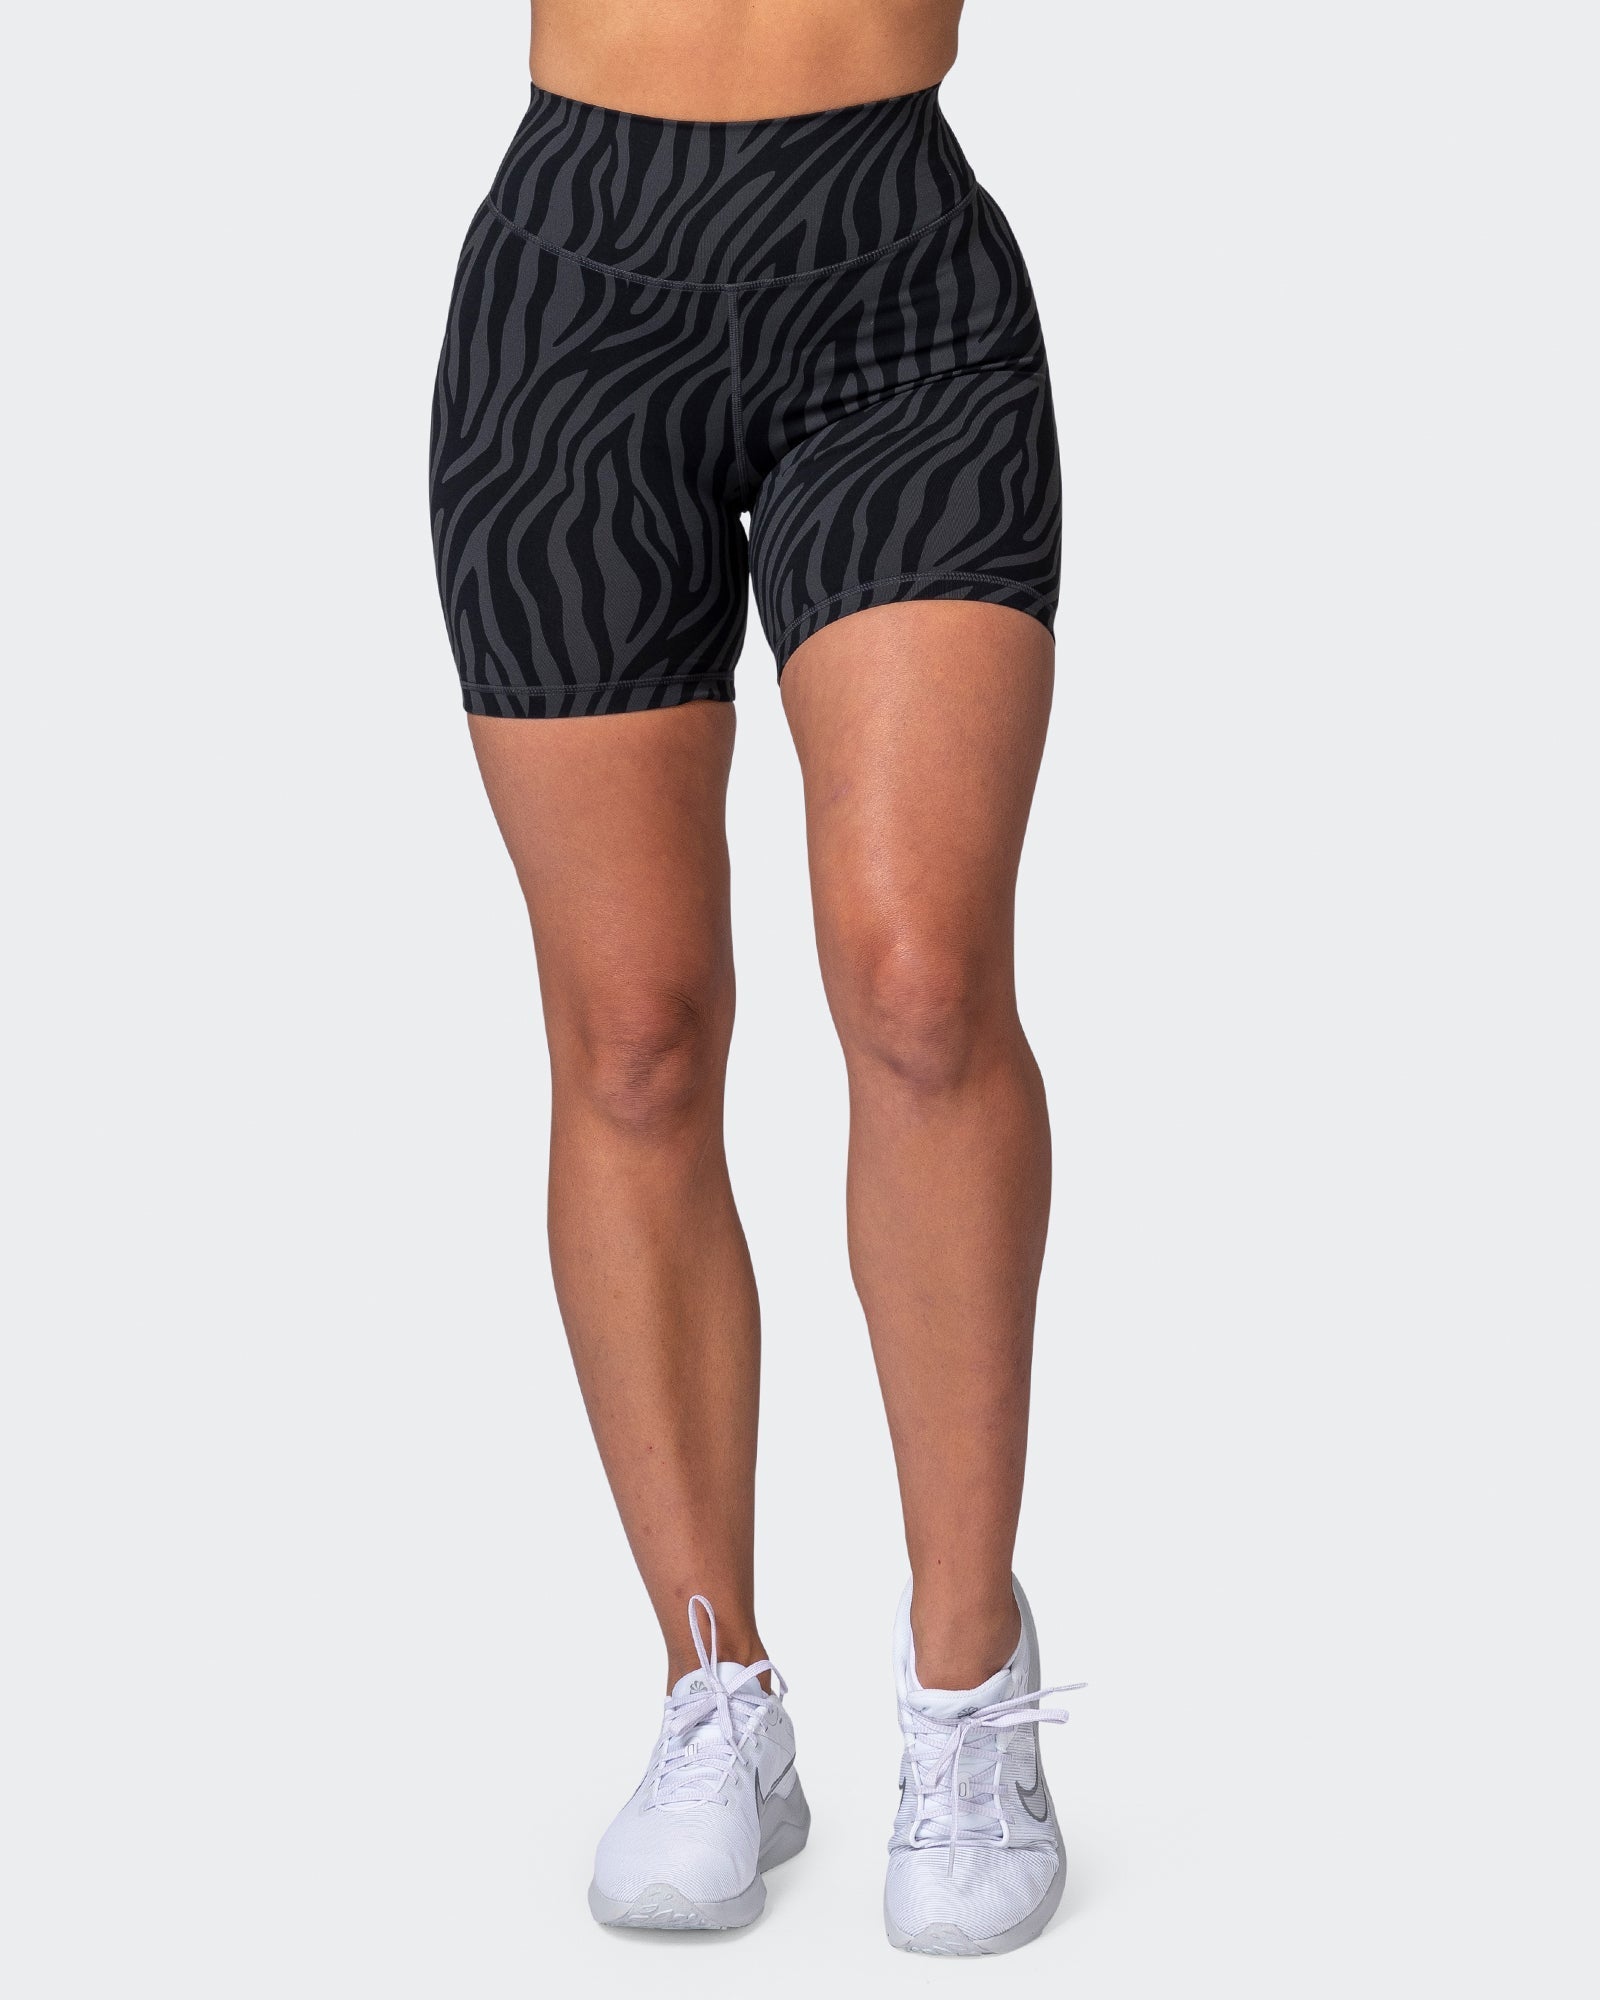 musclenation Shorts Signature Scrunch Bike Shorts - Monochrome Zebra Print